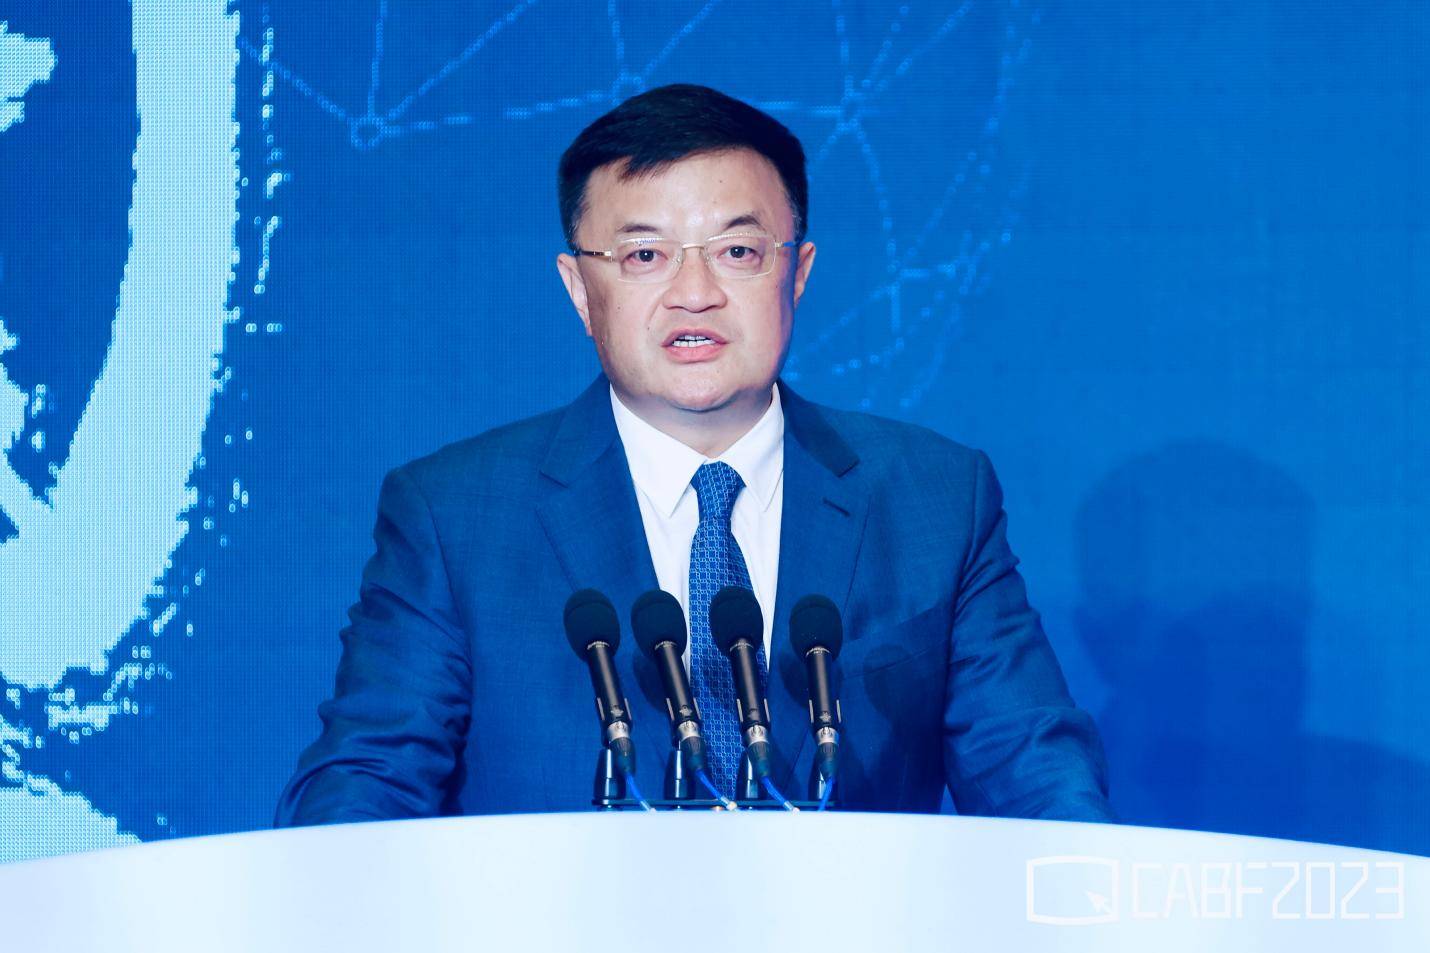 汽车产业高端对话 第十五届中国汽车蓝皮书论坛开幕